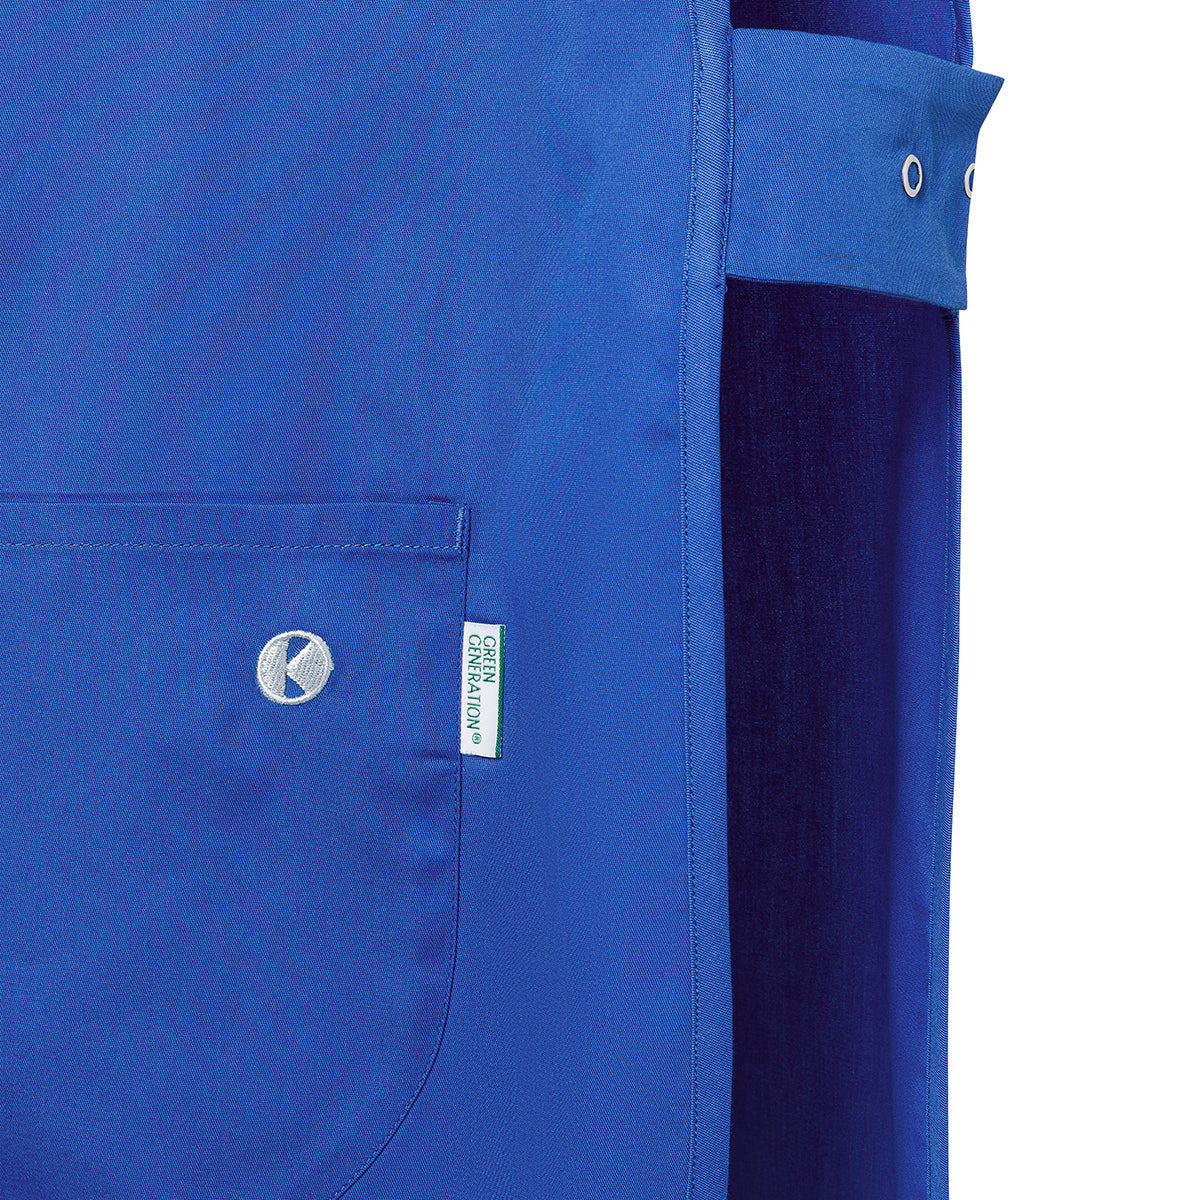 (6 stk.) Karlowsky - Throw Over Jacket Essential - Royal Blue - Størrelse: S